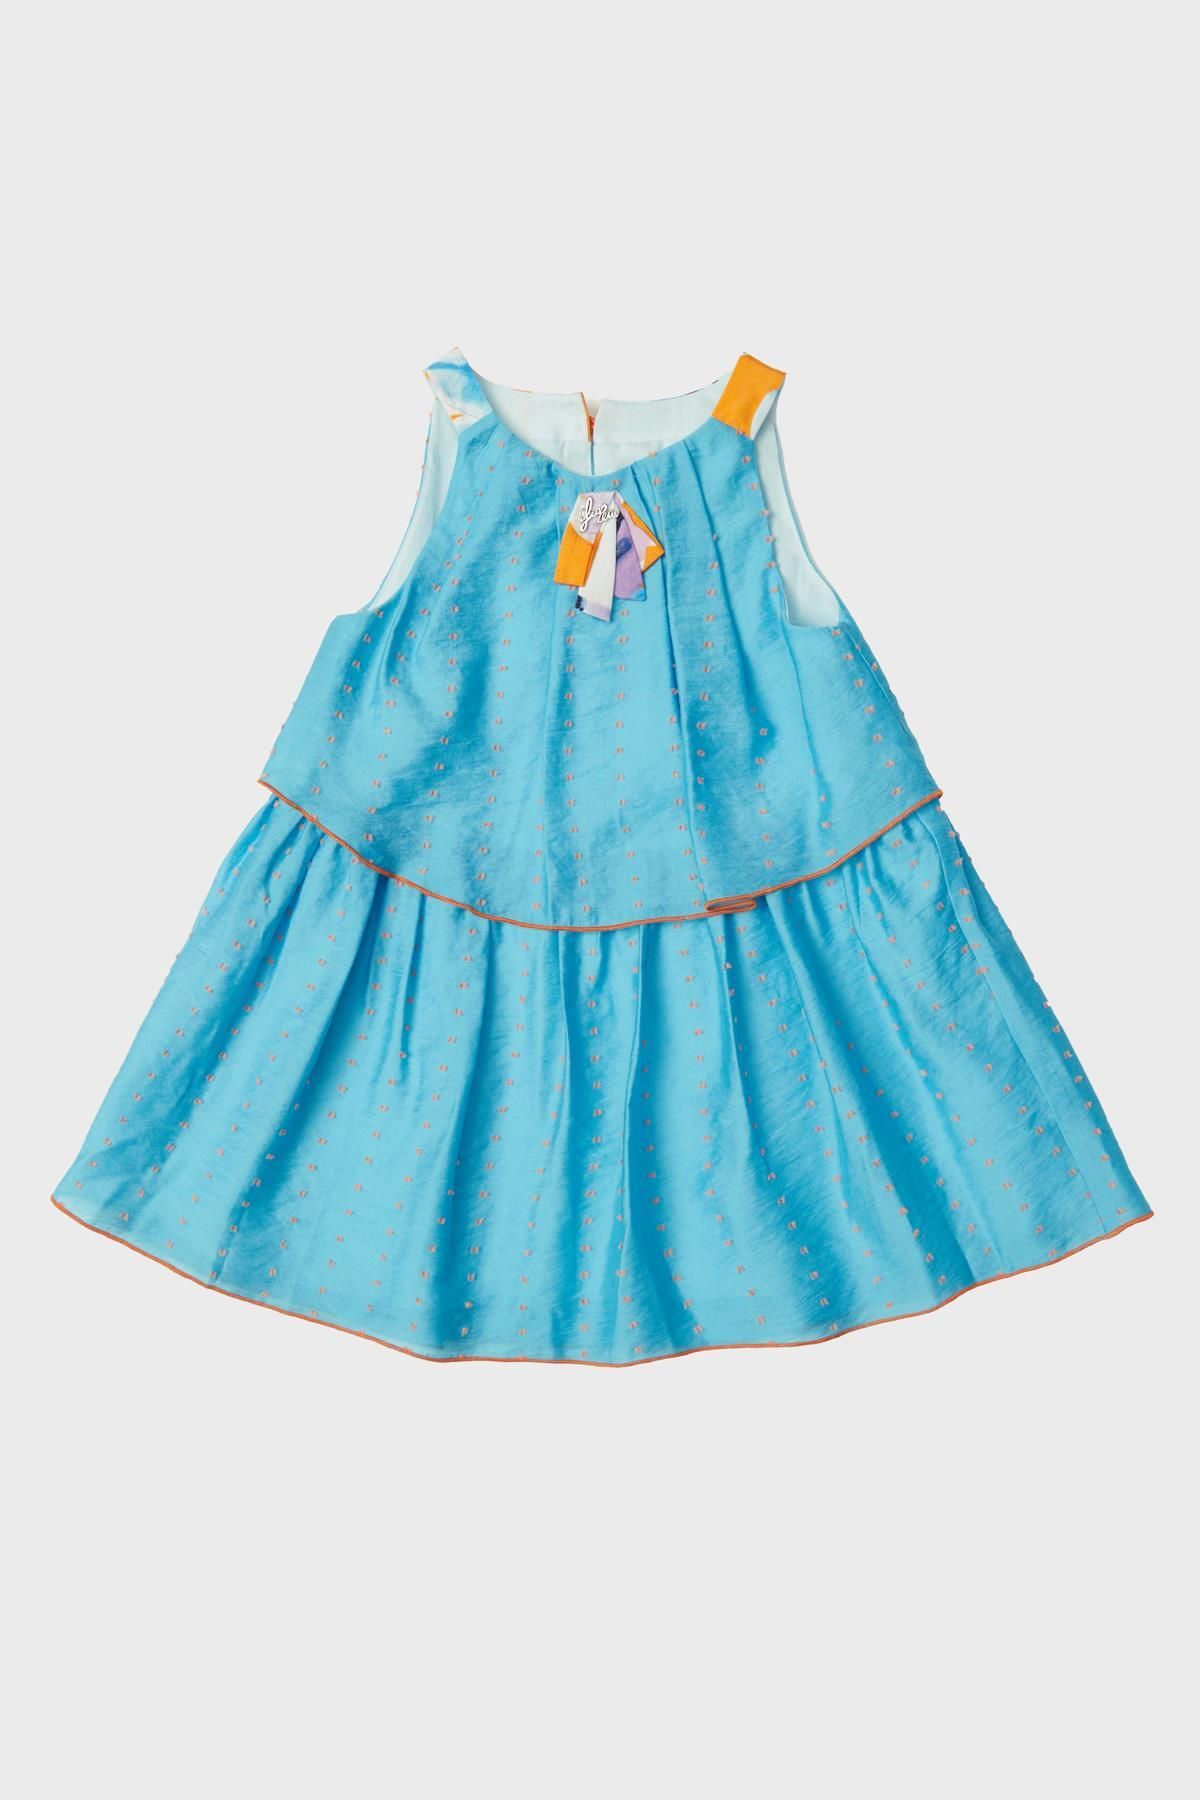 Lia Lea BG Store Kız Bebek Mavi Elbise